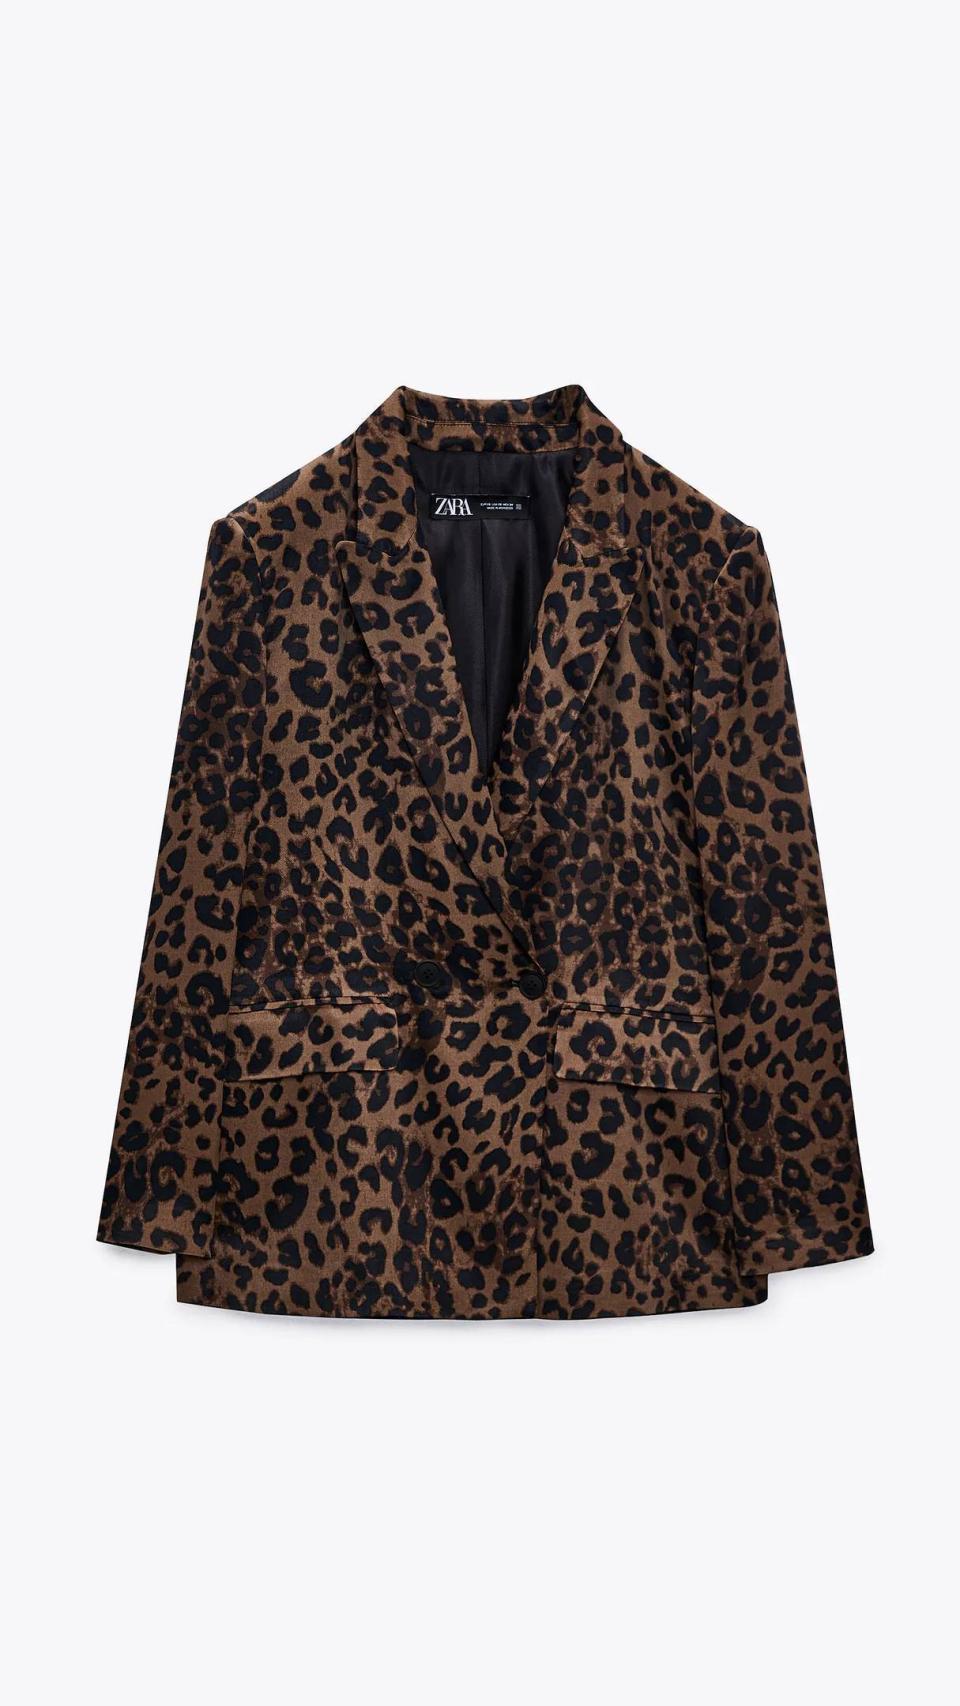 Panorama Palpitar Sin valor Zara se inspira en Dior y crea la chaqueta que querrás este otoño